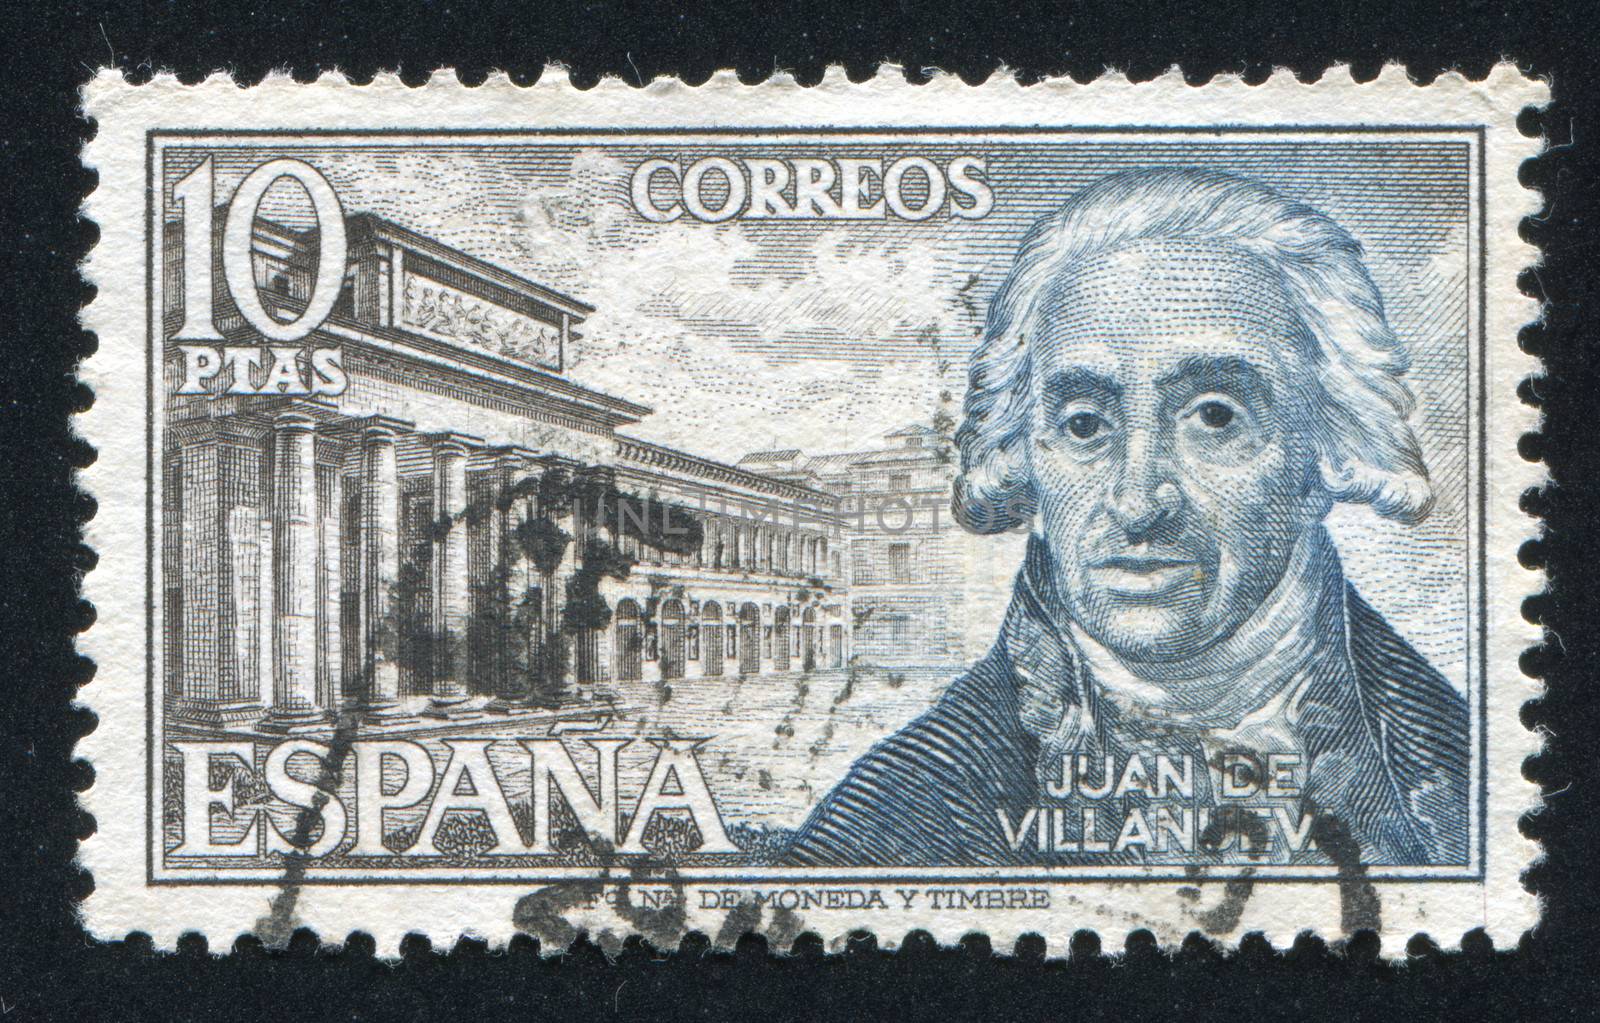 Juan de Villanueva and Prado by rook